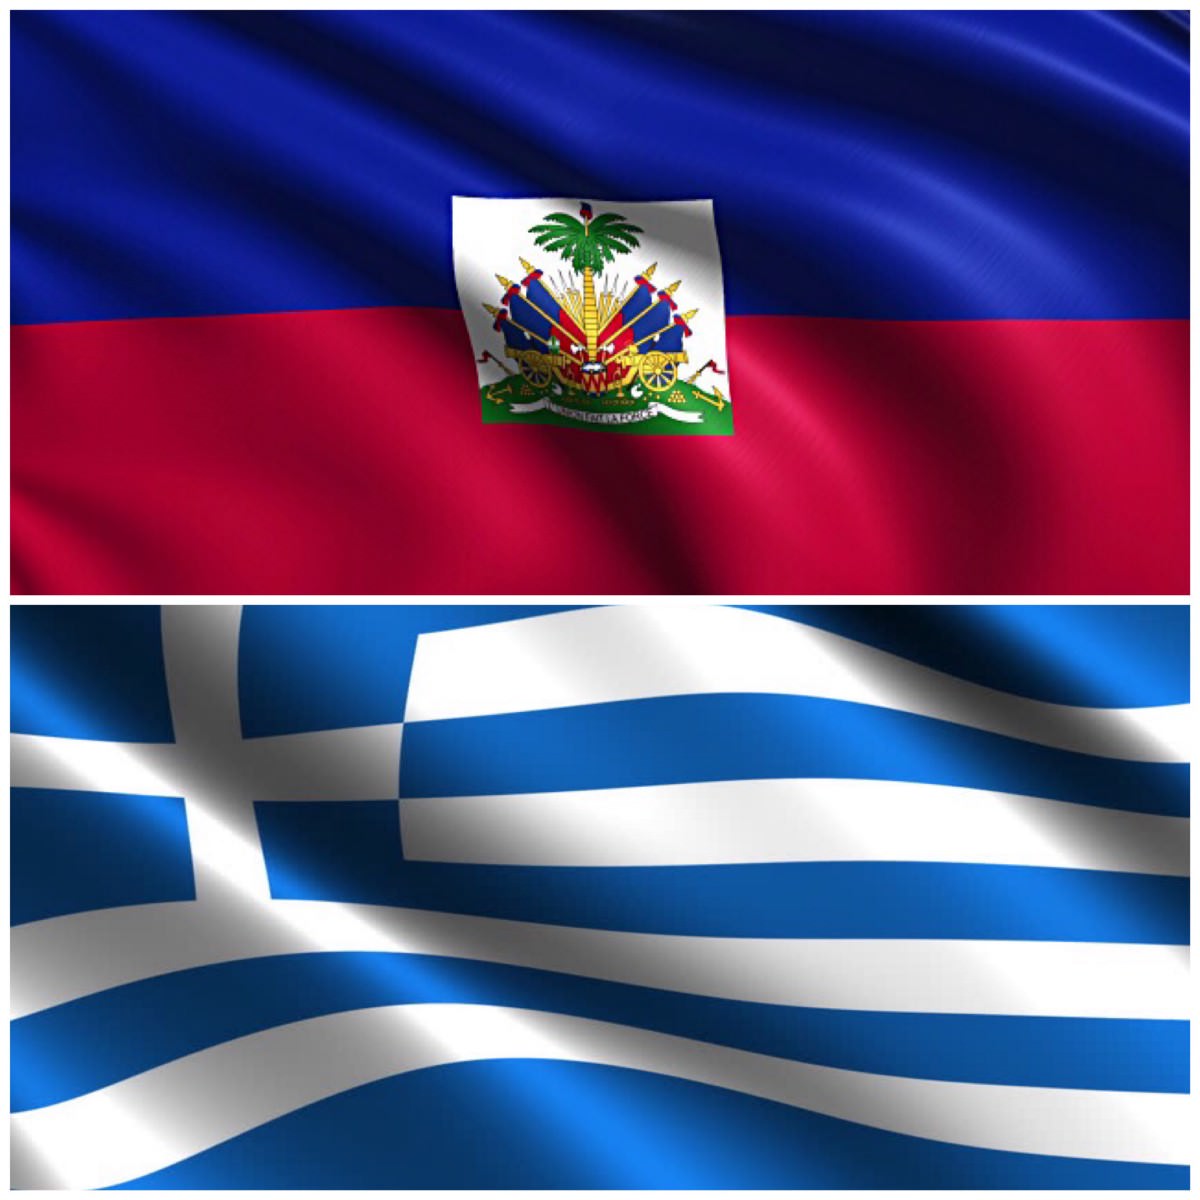 Κ. Μπογδάνος: Η πολιτεία να τιμήσει τους 100 Αϊτινούς που θυσιάστηκαν για την Ελλάδα το 1822